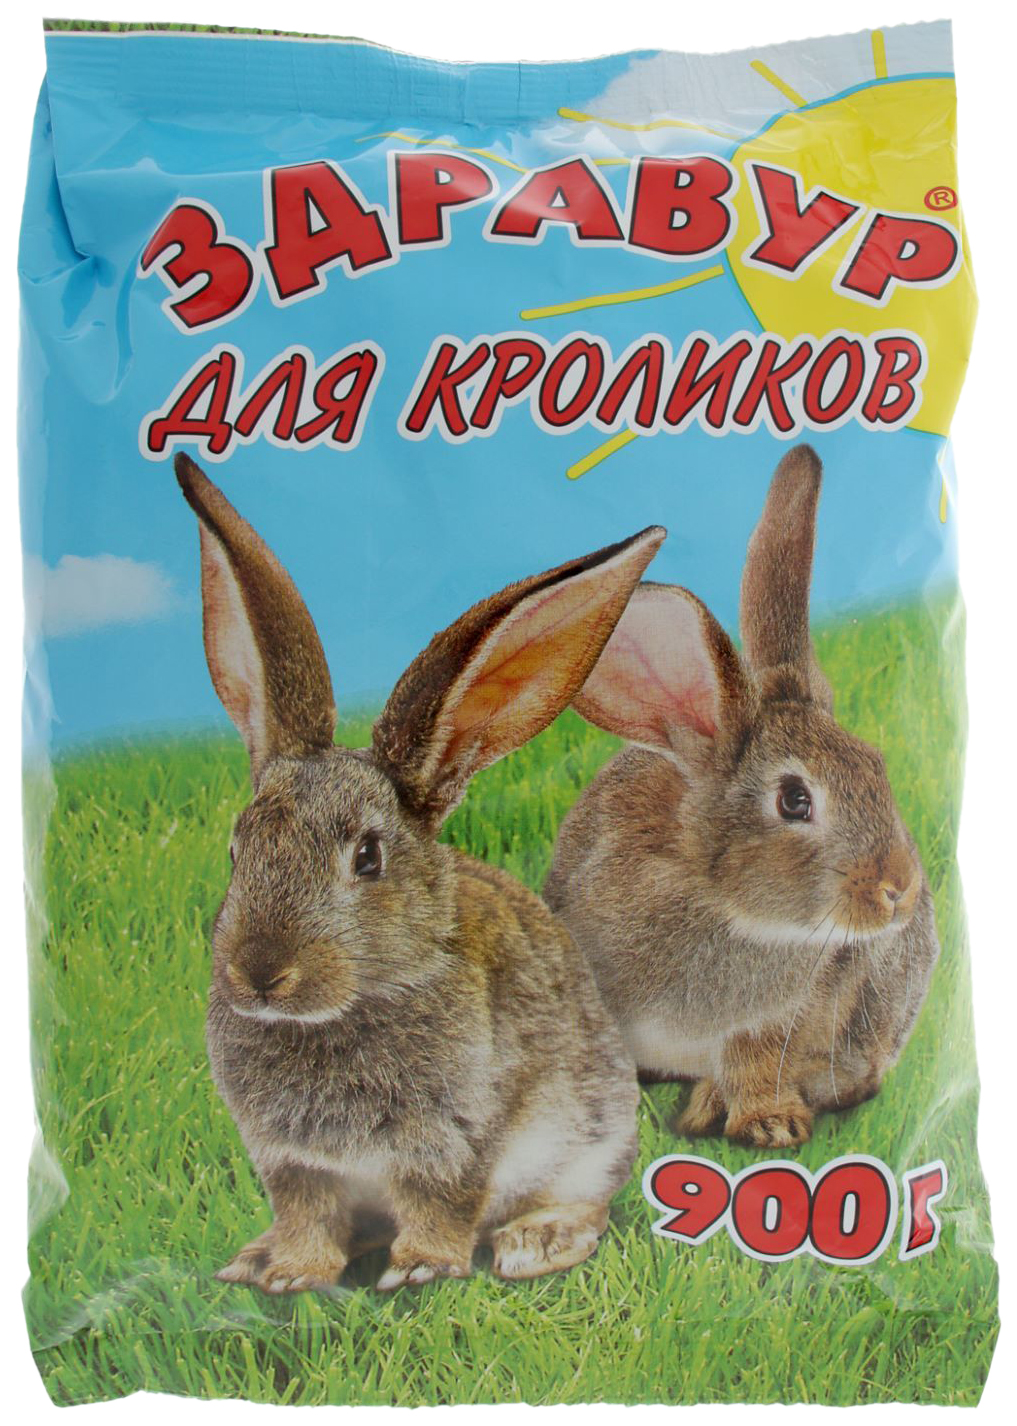 Премикс для кроликов Ваше Хозяйство Здравур, 900 г, 2 шт